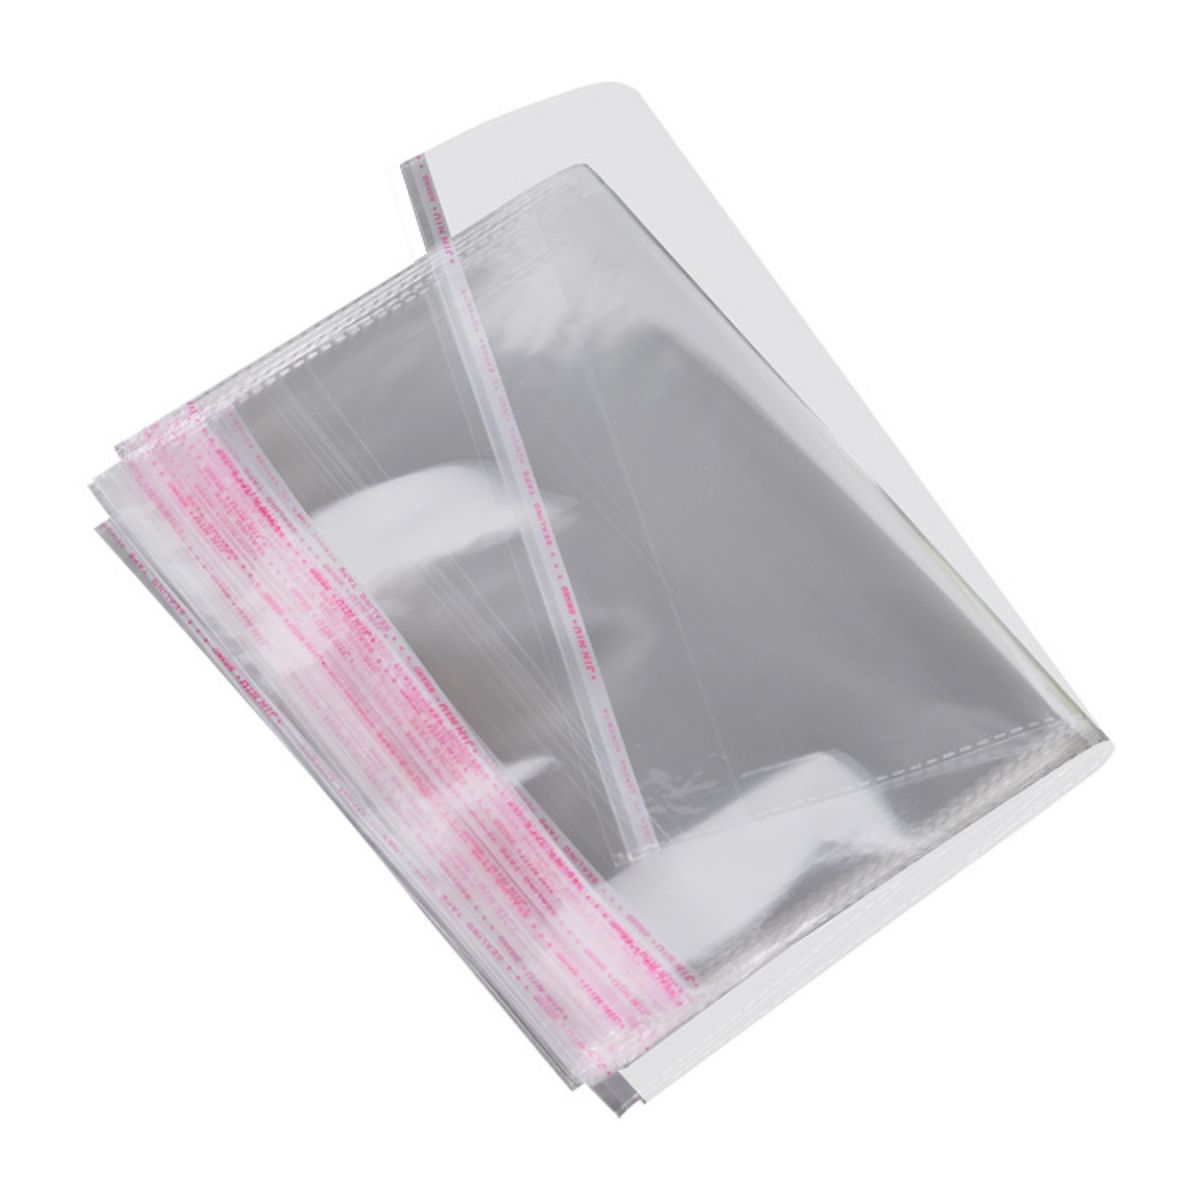 OPP袋（透明ビニール封筒）テープ付 24×34x0.08cm 【200枚】